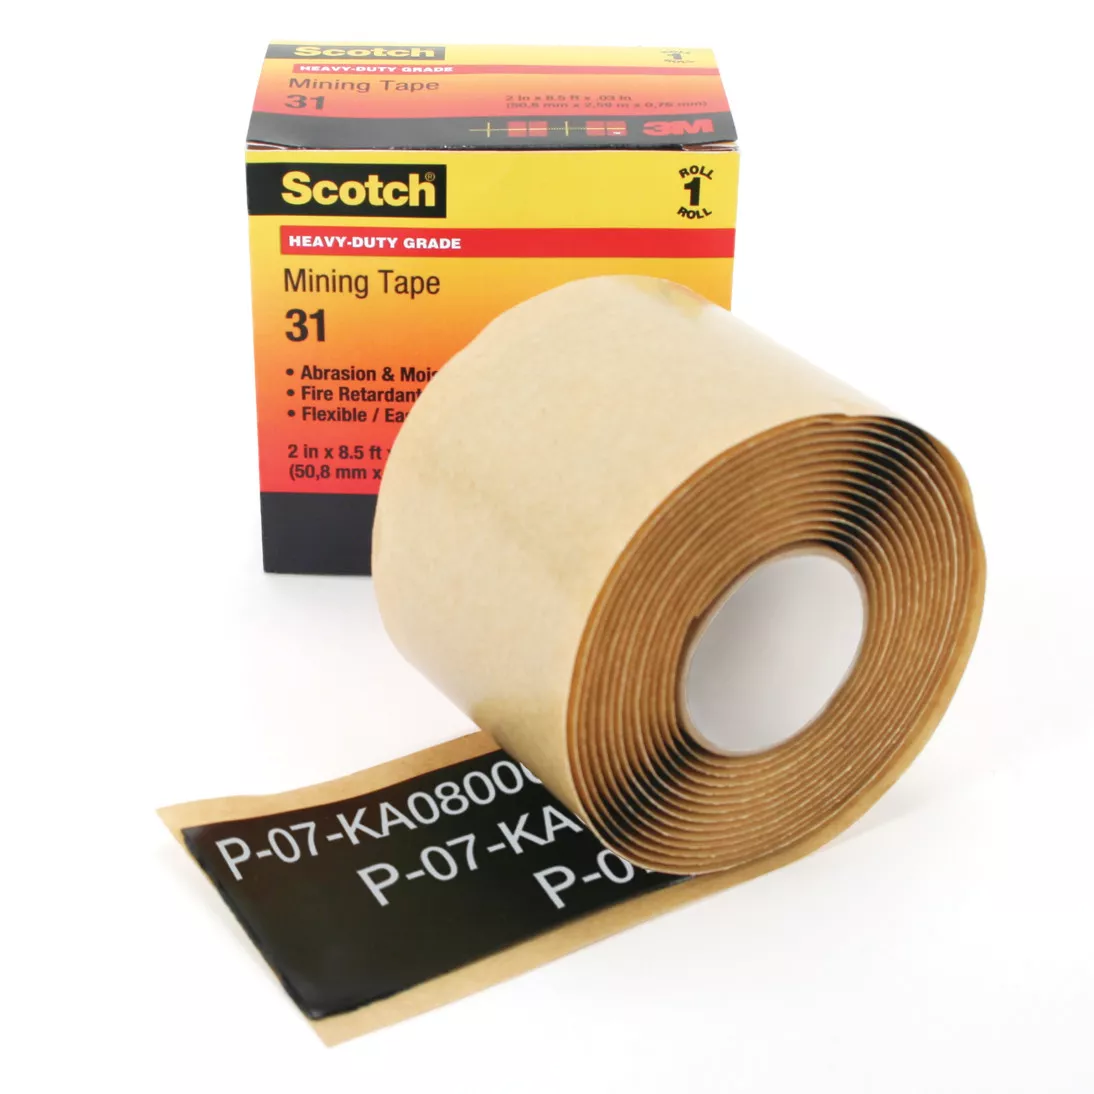 Scotch® Heavy-Duty Mining Tape 31, 2 in x 8-1/2 ft, Black, 1
roll/carton, 10 rolls/Case